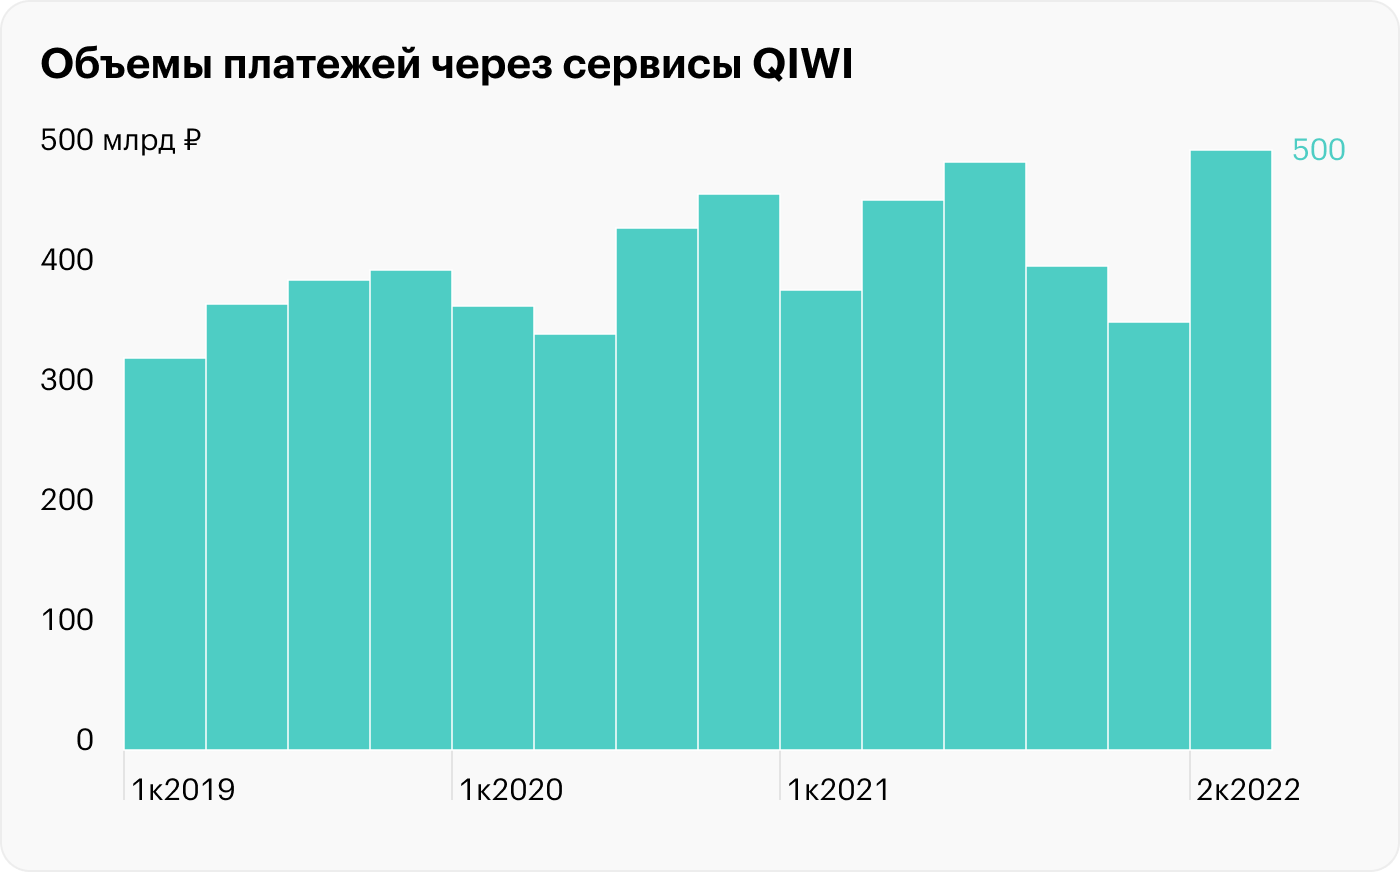 Отчет QIWI: финансовые результаты на максимуме, а биржевые котировки на дне